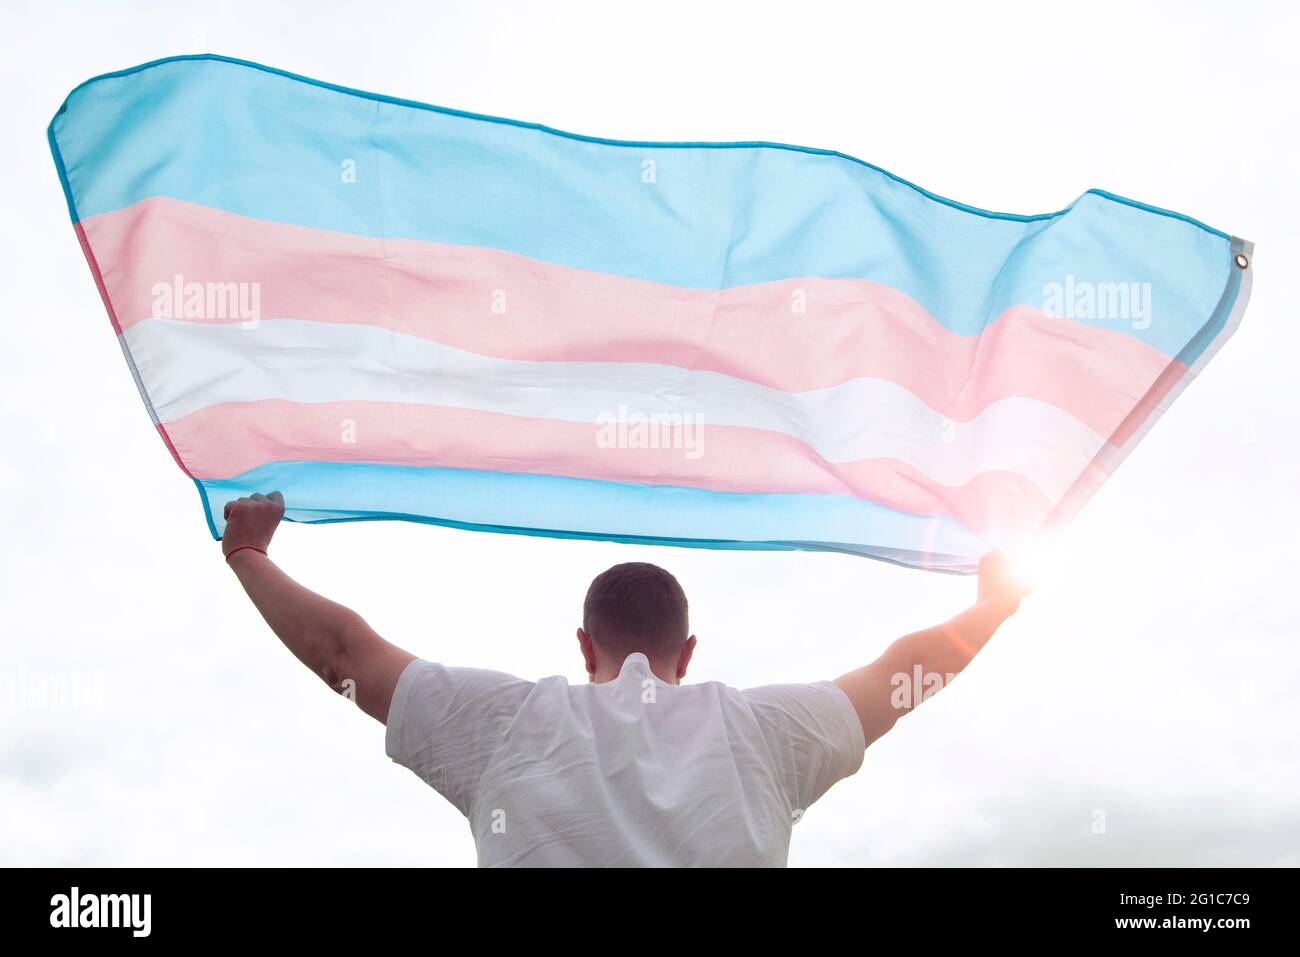 Uomo transgender che tiene sventolando bandiera transgender, immagine concettuale sui diritti umani, uguaglianza nel mondo Foto Stock